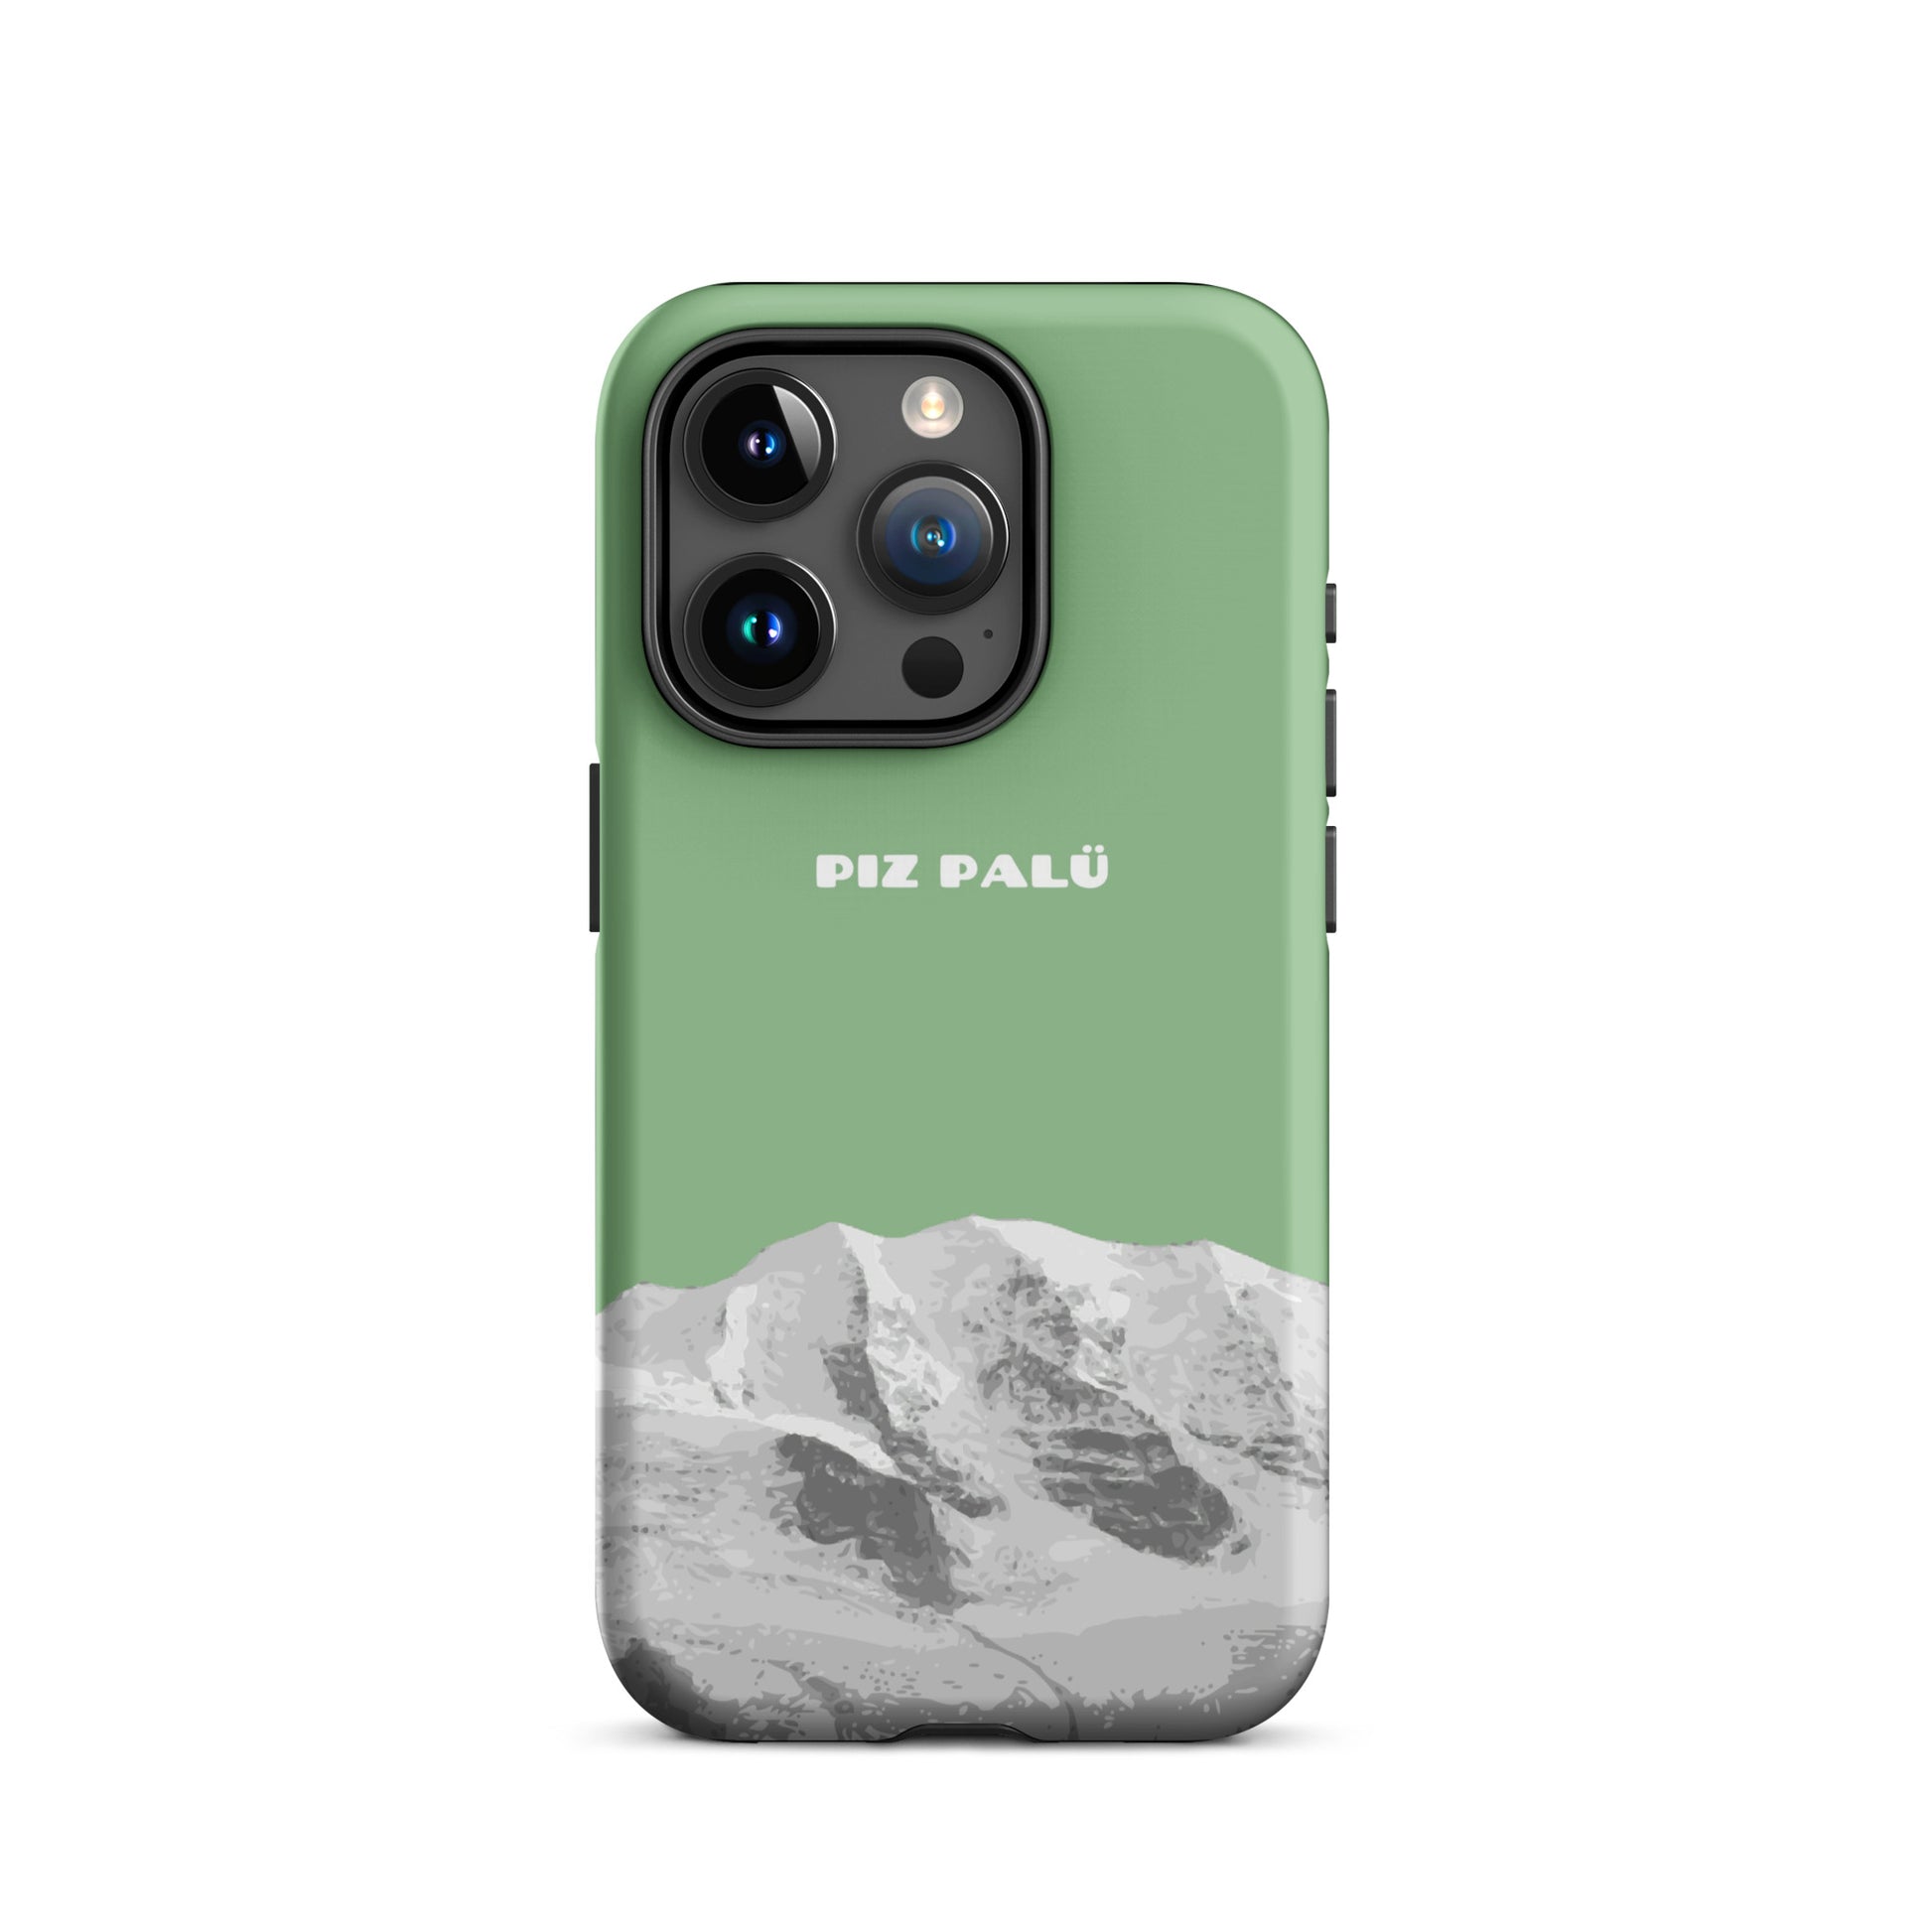 Hülle für das iPhone 15 Pro von Apple in der Farbe Hellgrün, dass den Piz Palü in Graubünden zeigt.